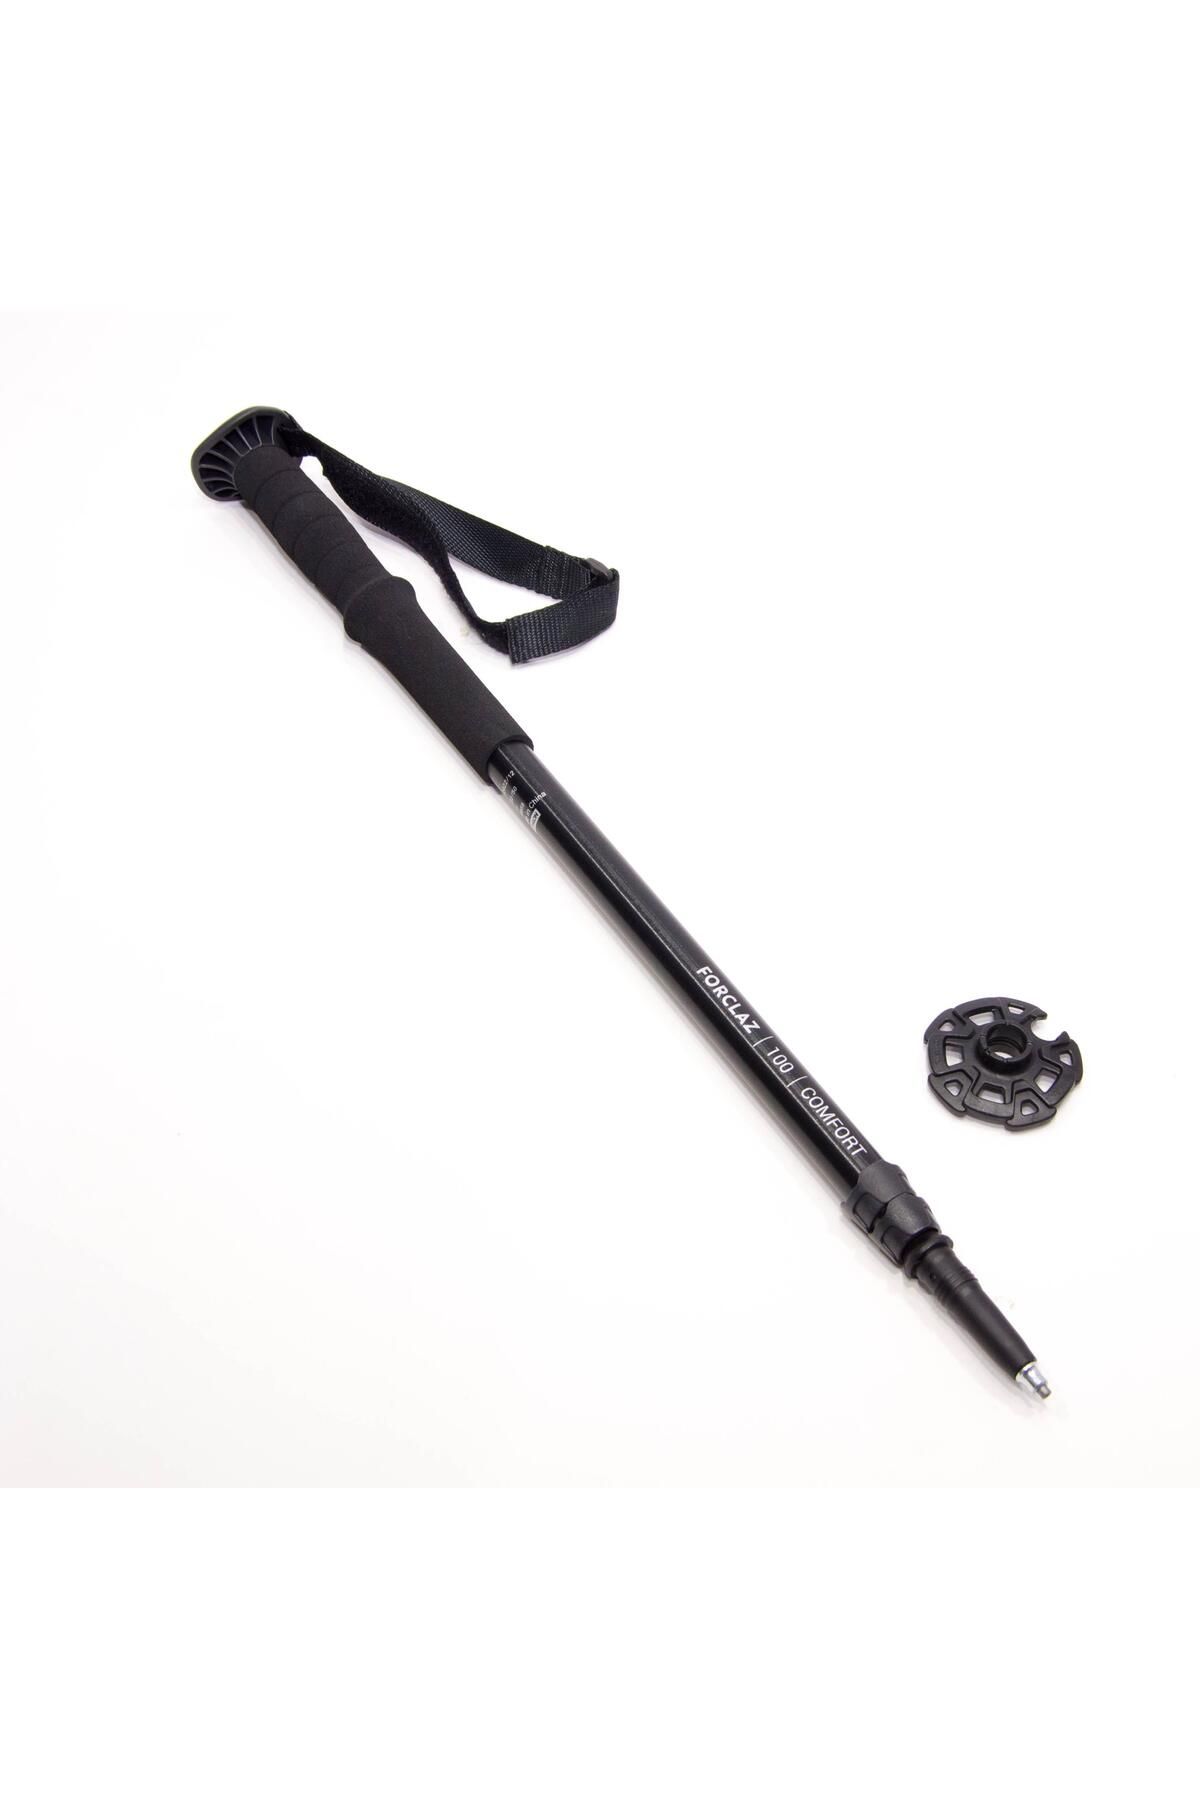 Decathlon Outdoor Ayarlanabilir Baton - Siyah Push Pin Düğmeli Ayar Sistemi 110/115/120/125/130 cm Meridyenduk